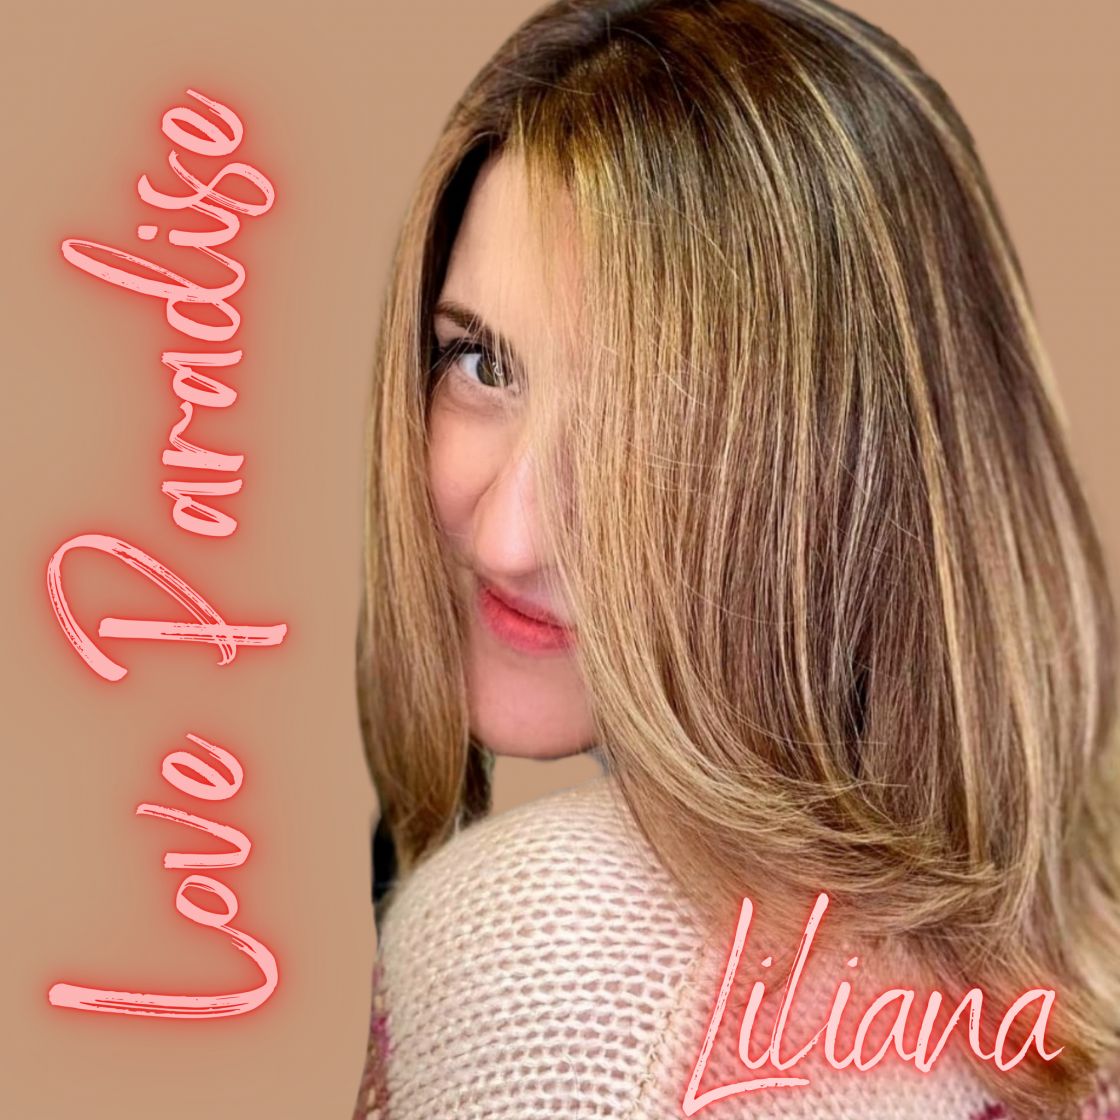 Who is Liliana Ferreira?